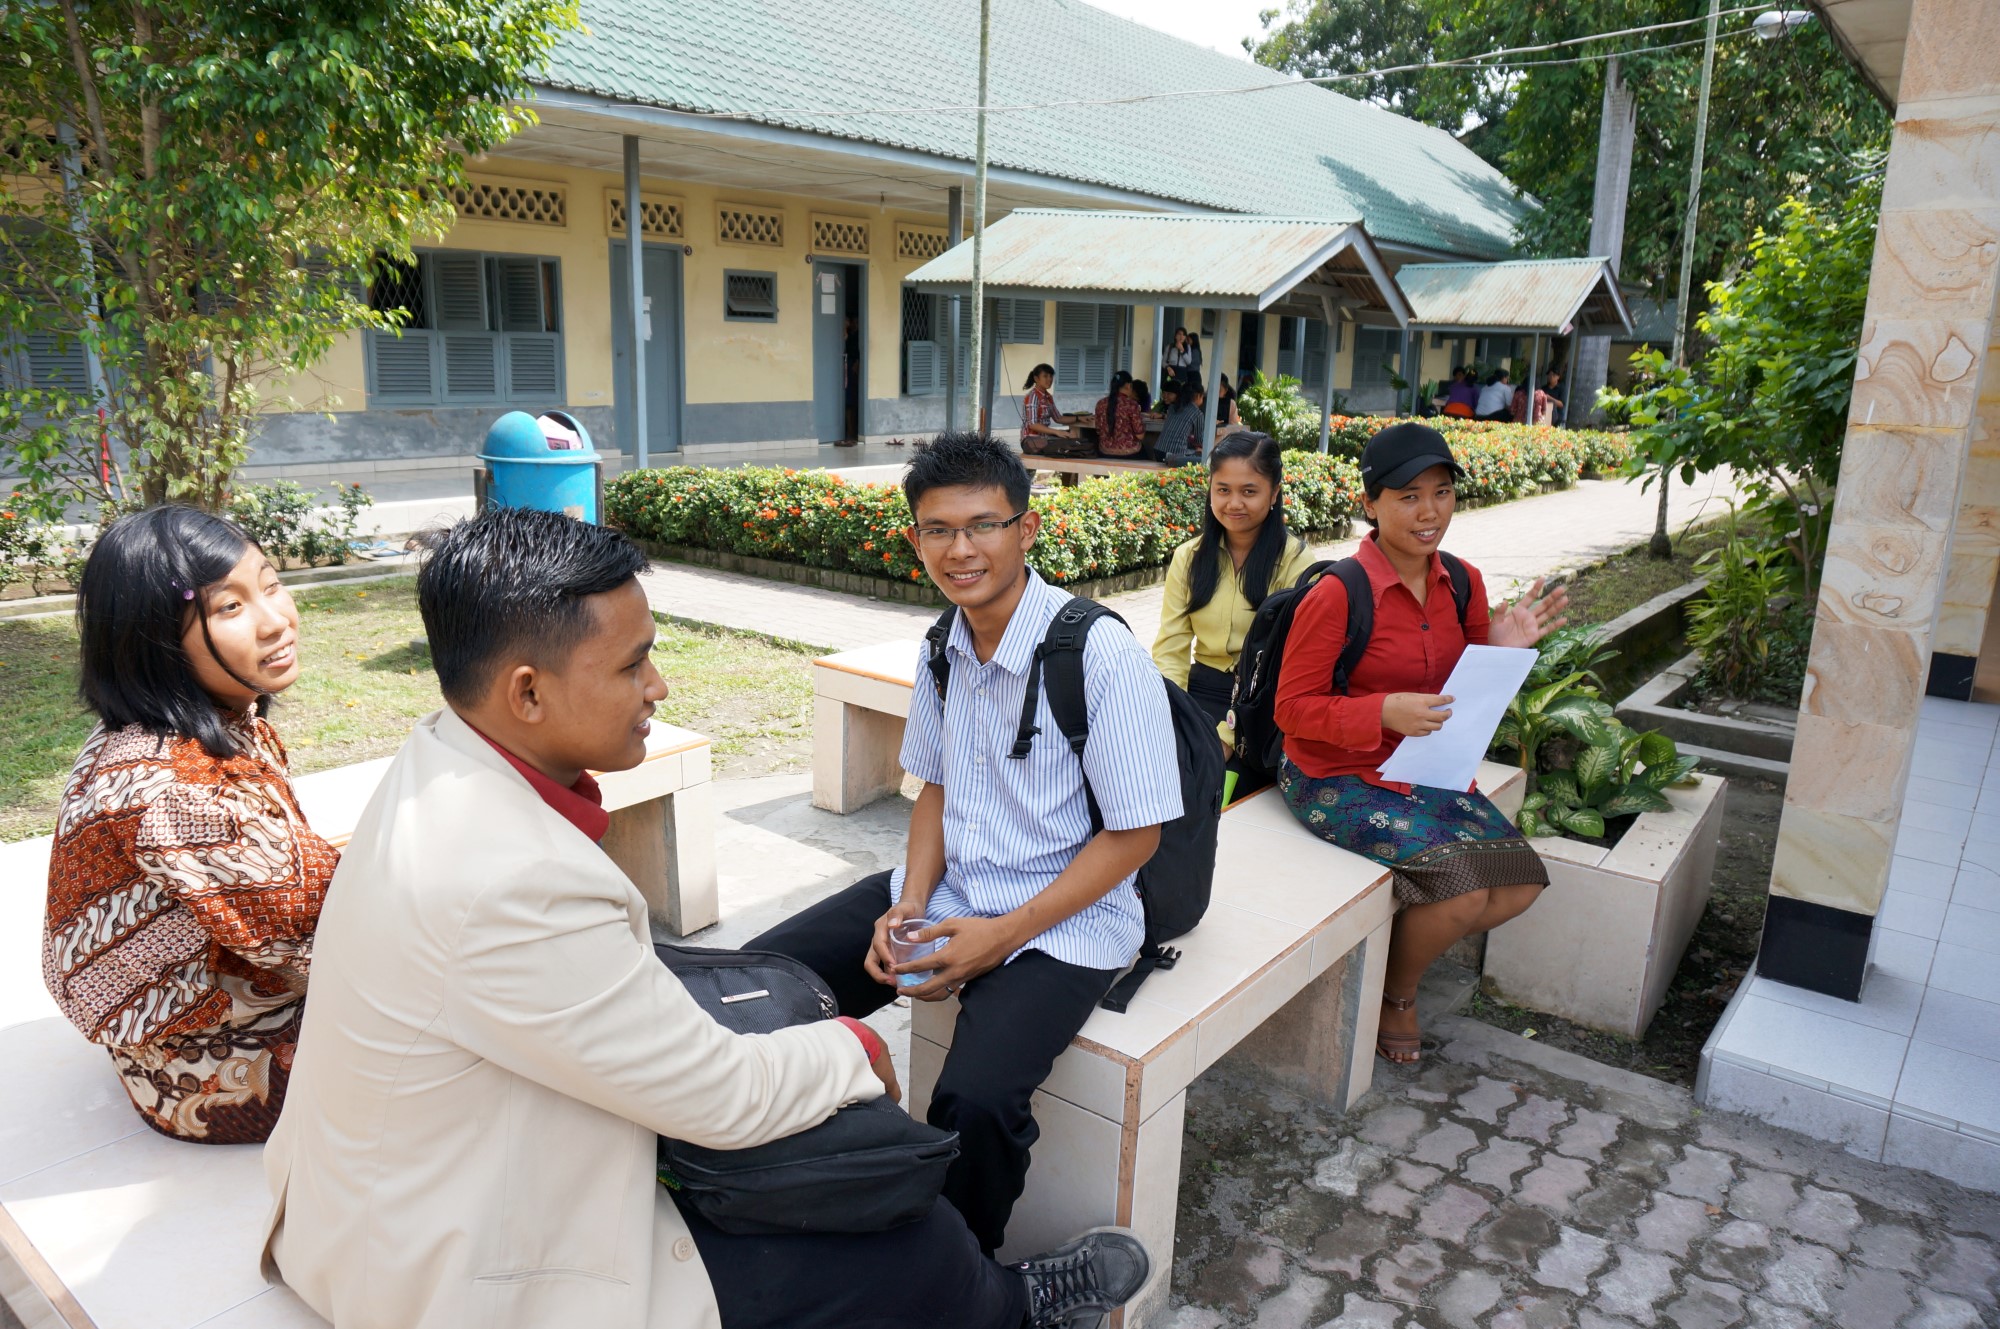 Bilde av indonesiske studenter